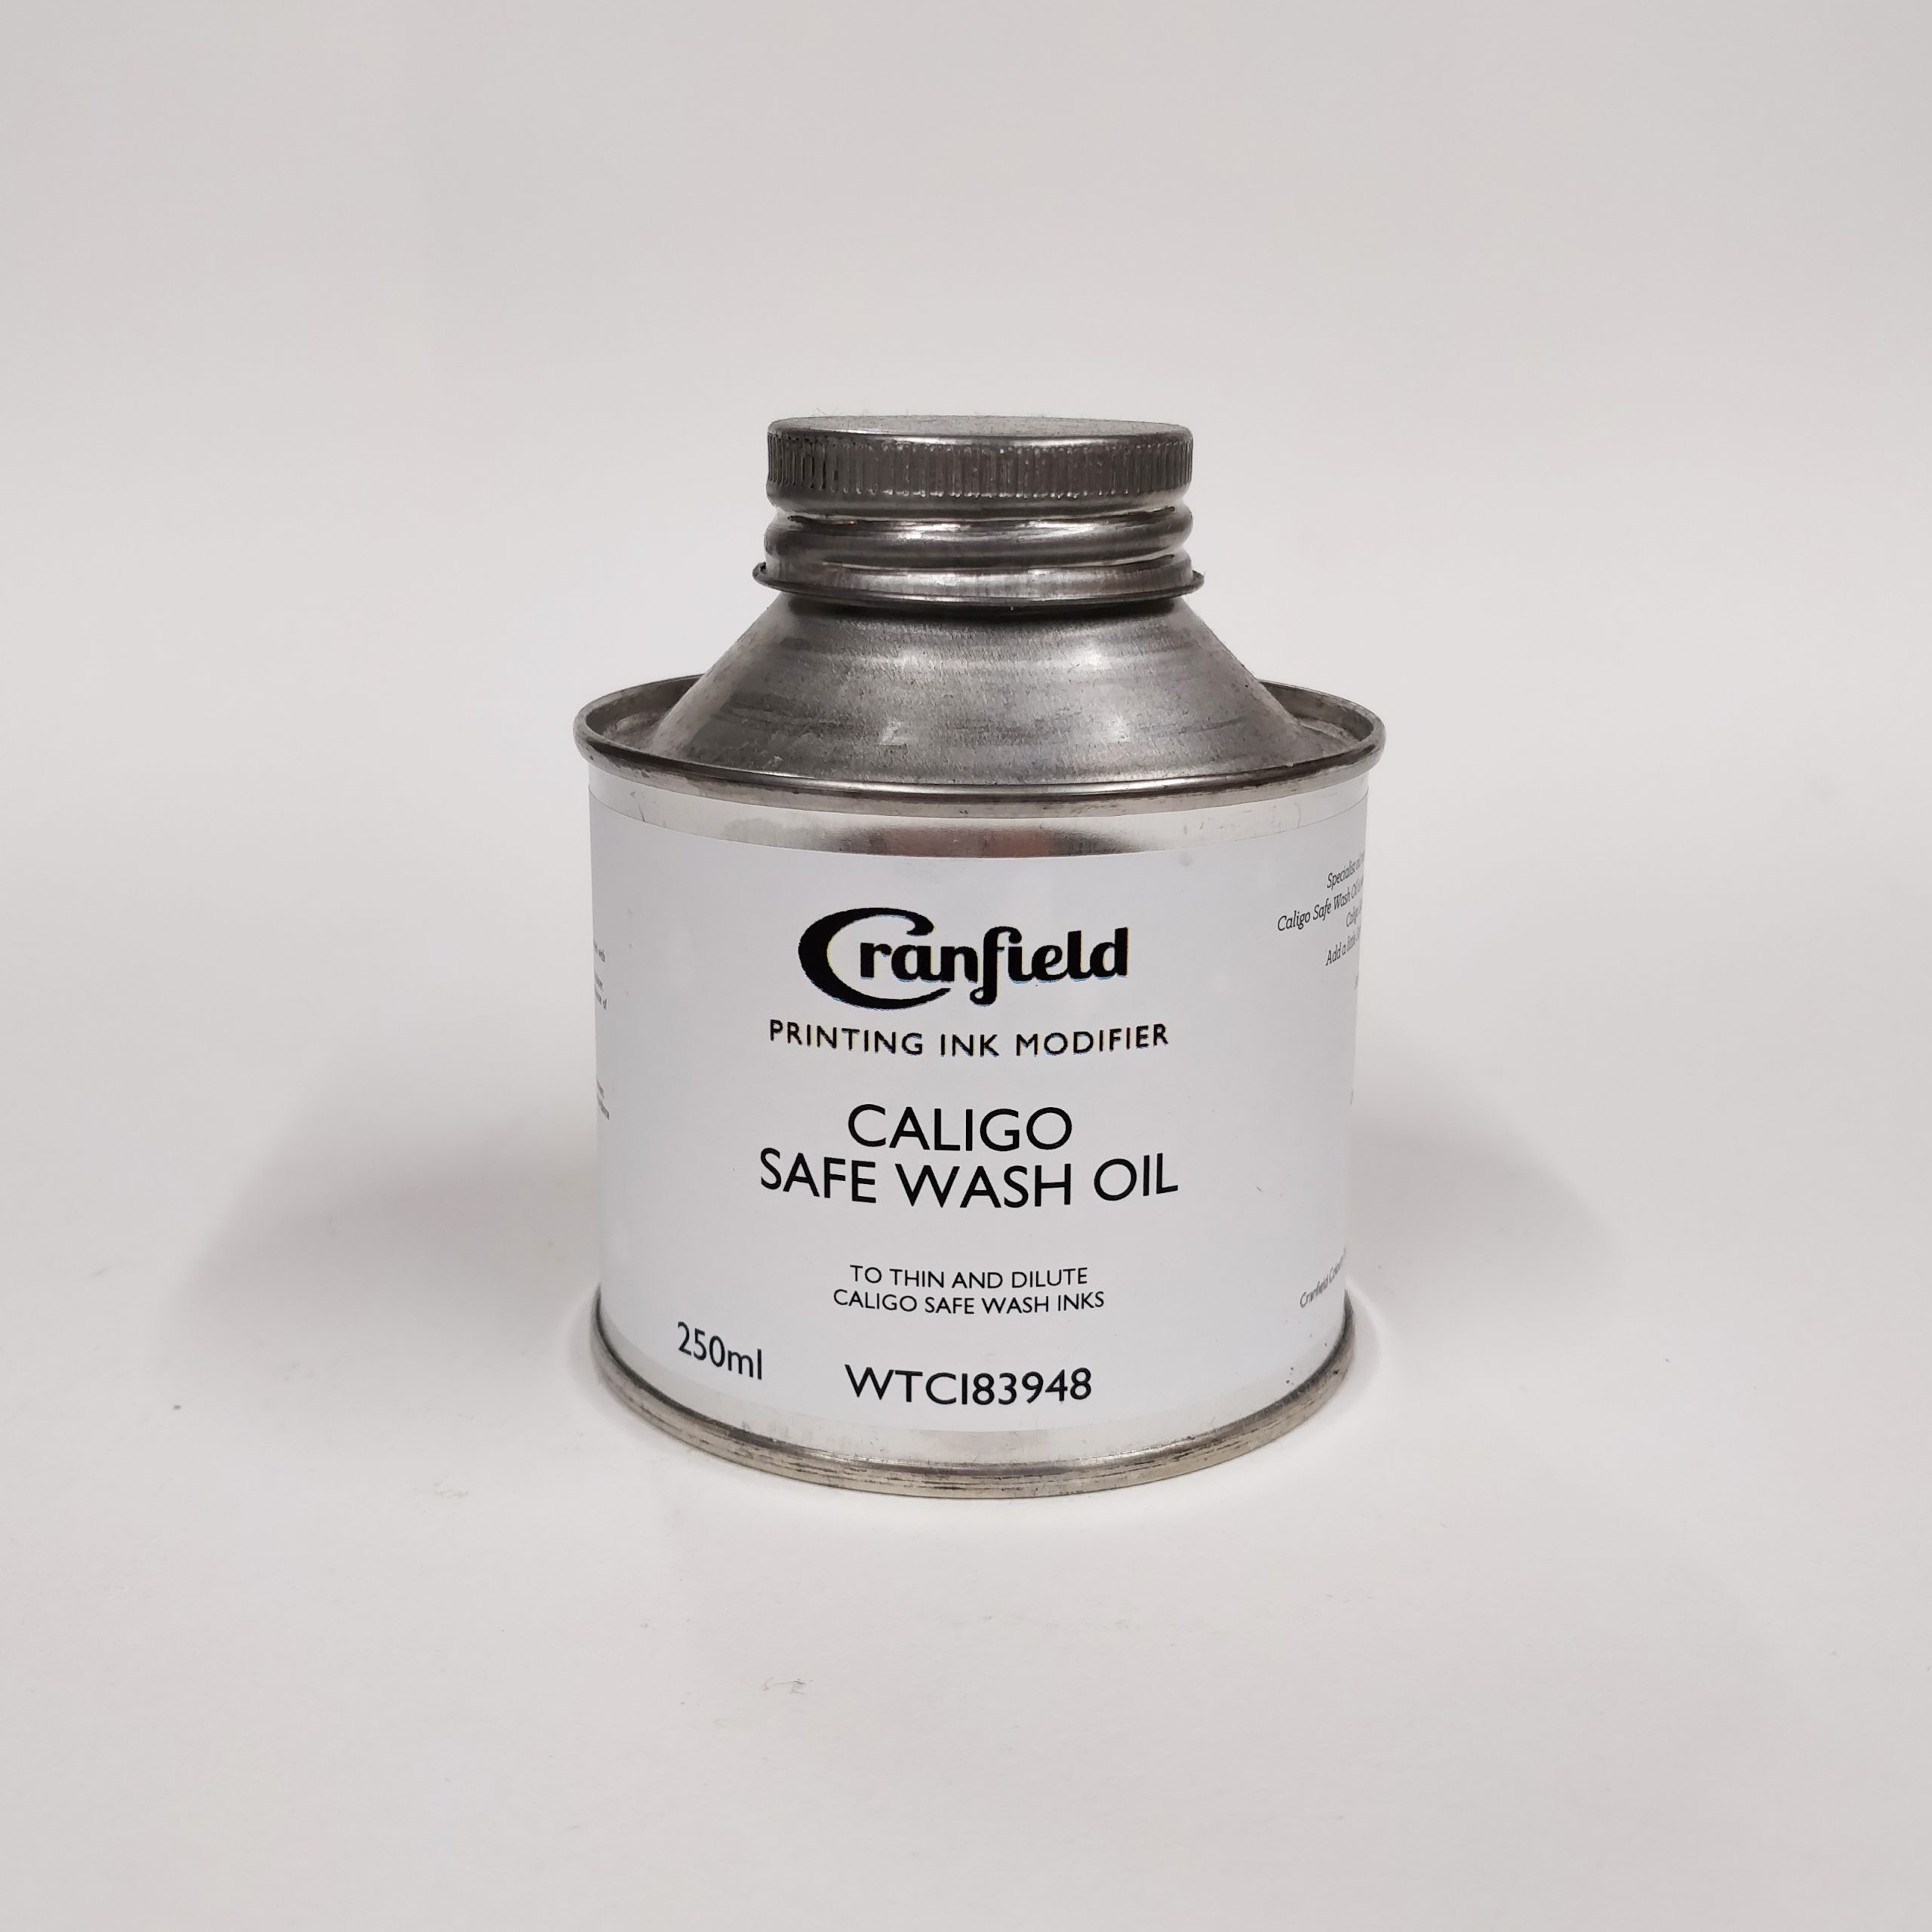 Caligo Safe Wash Oil